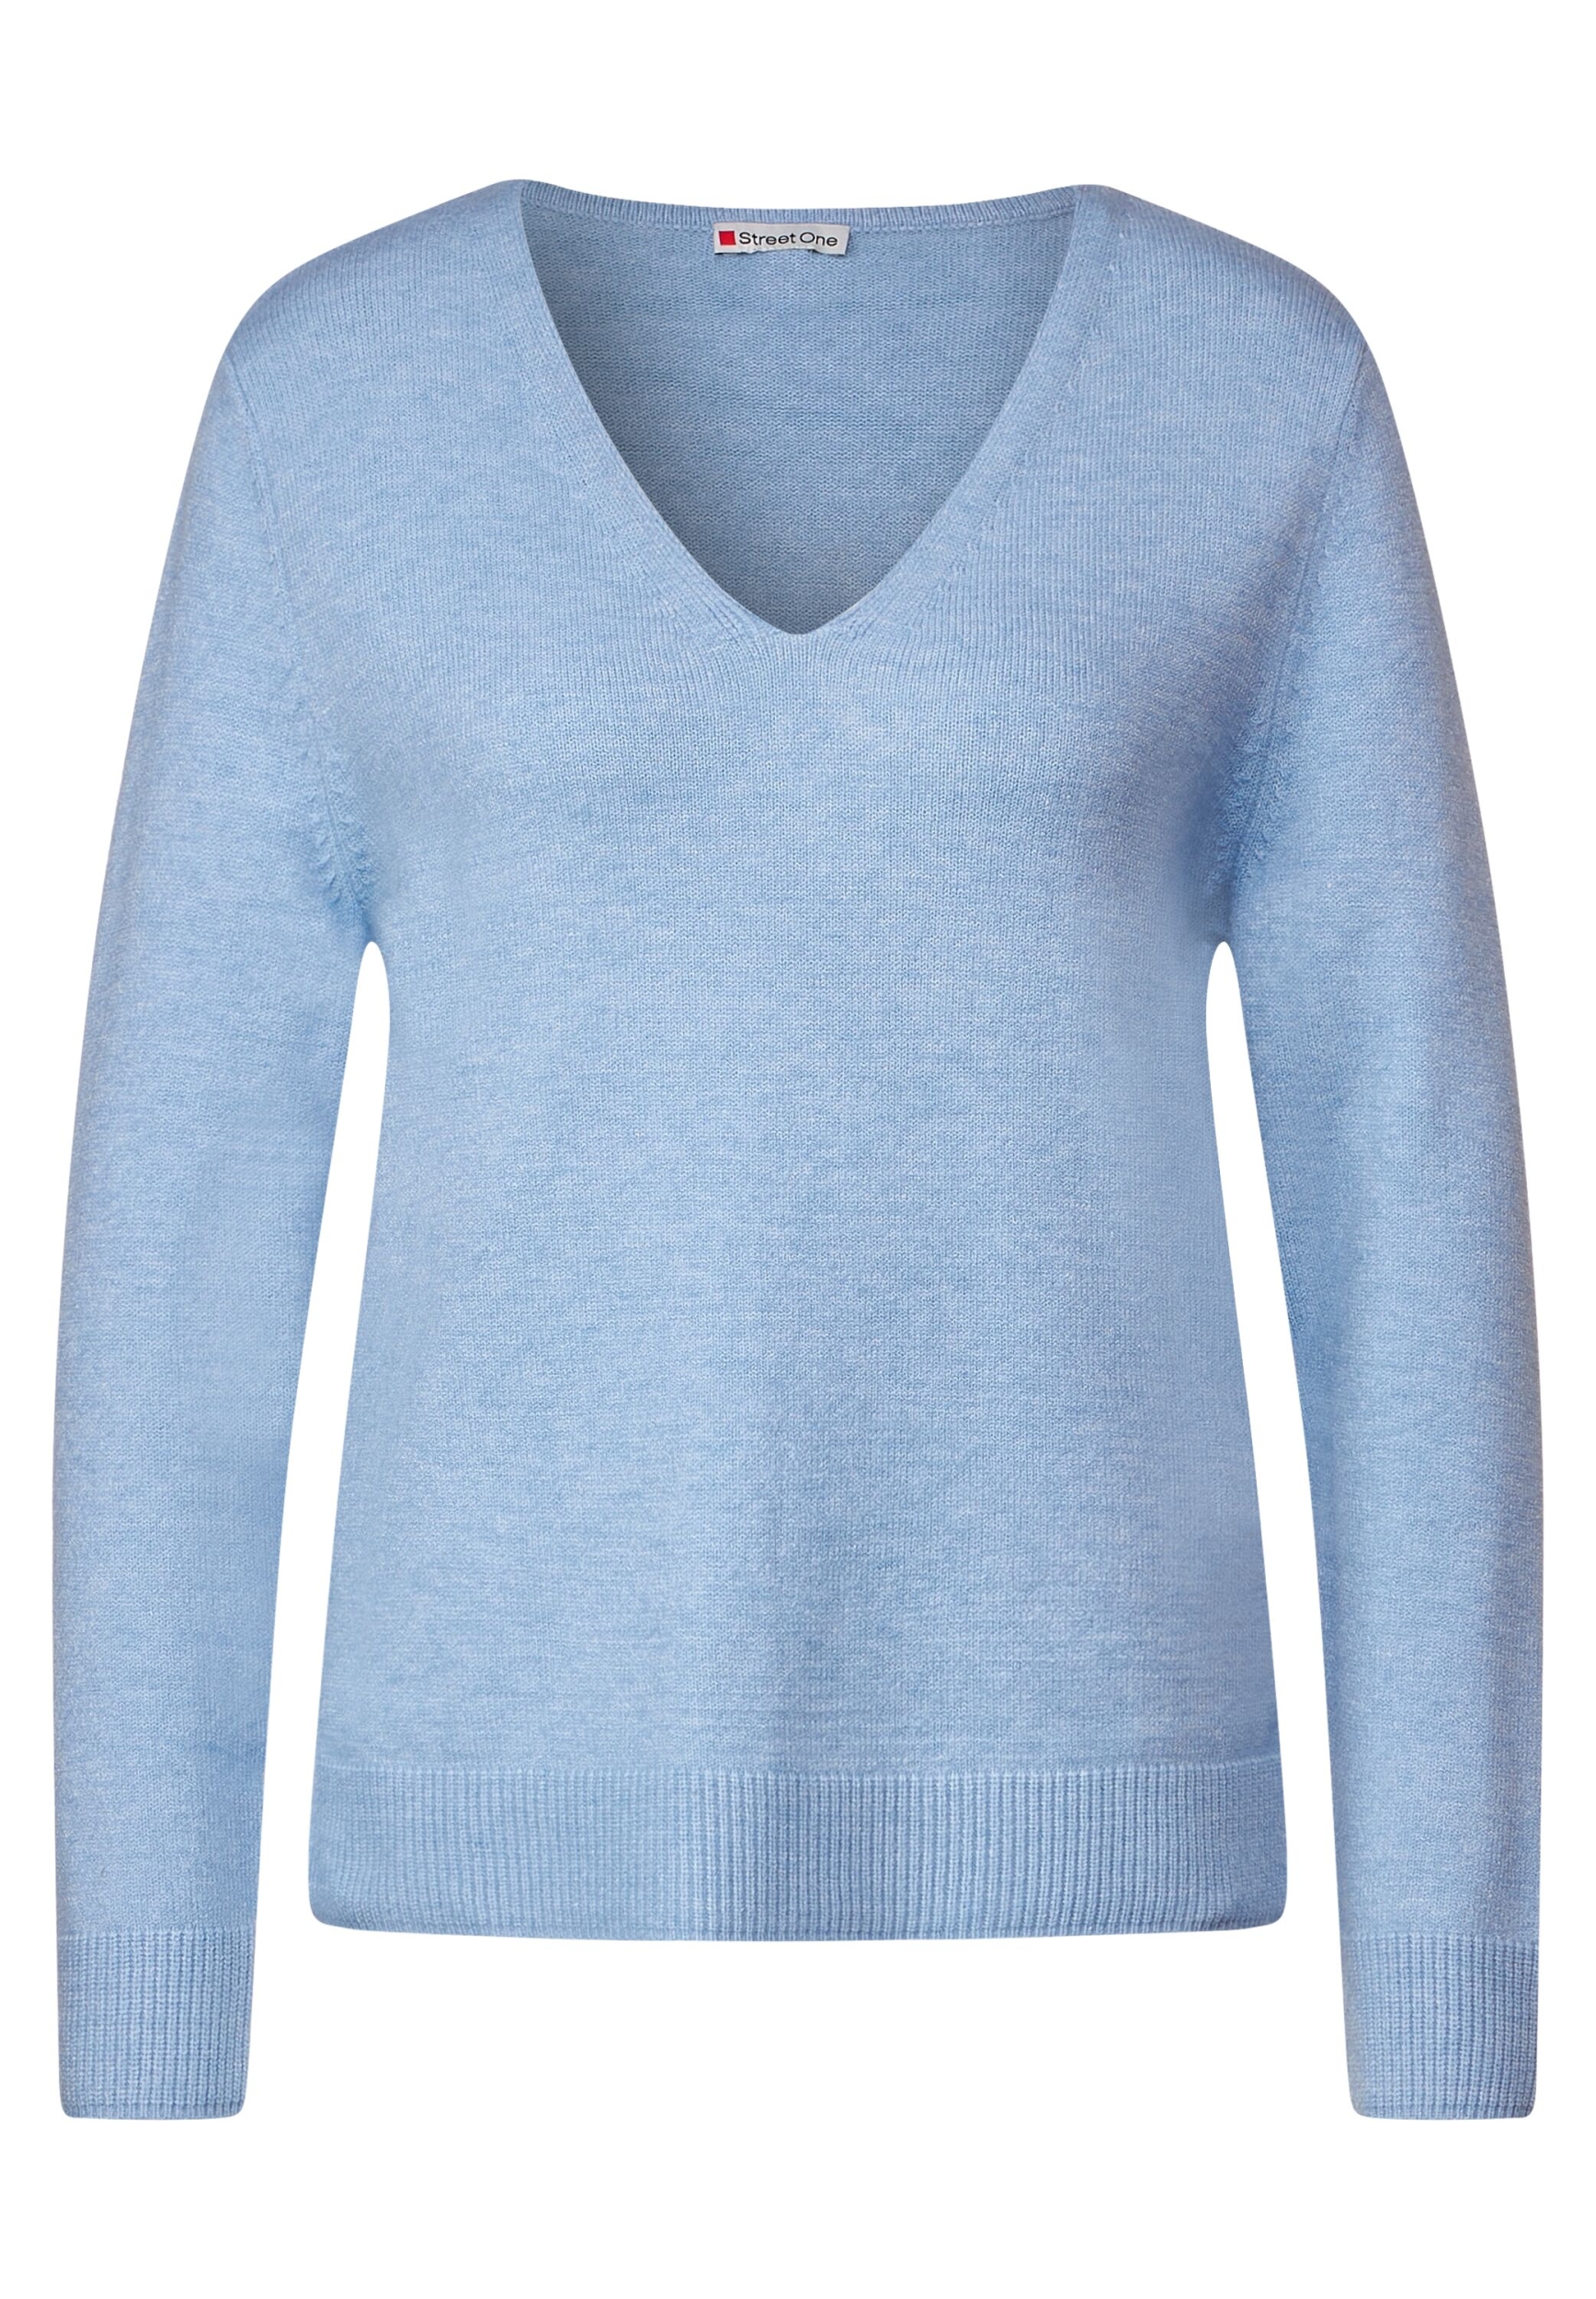 | QR melange A302343-14962-40 LTD feather blue | 40 | v-neck sweater